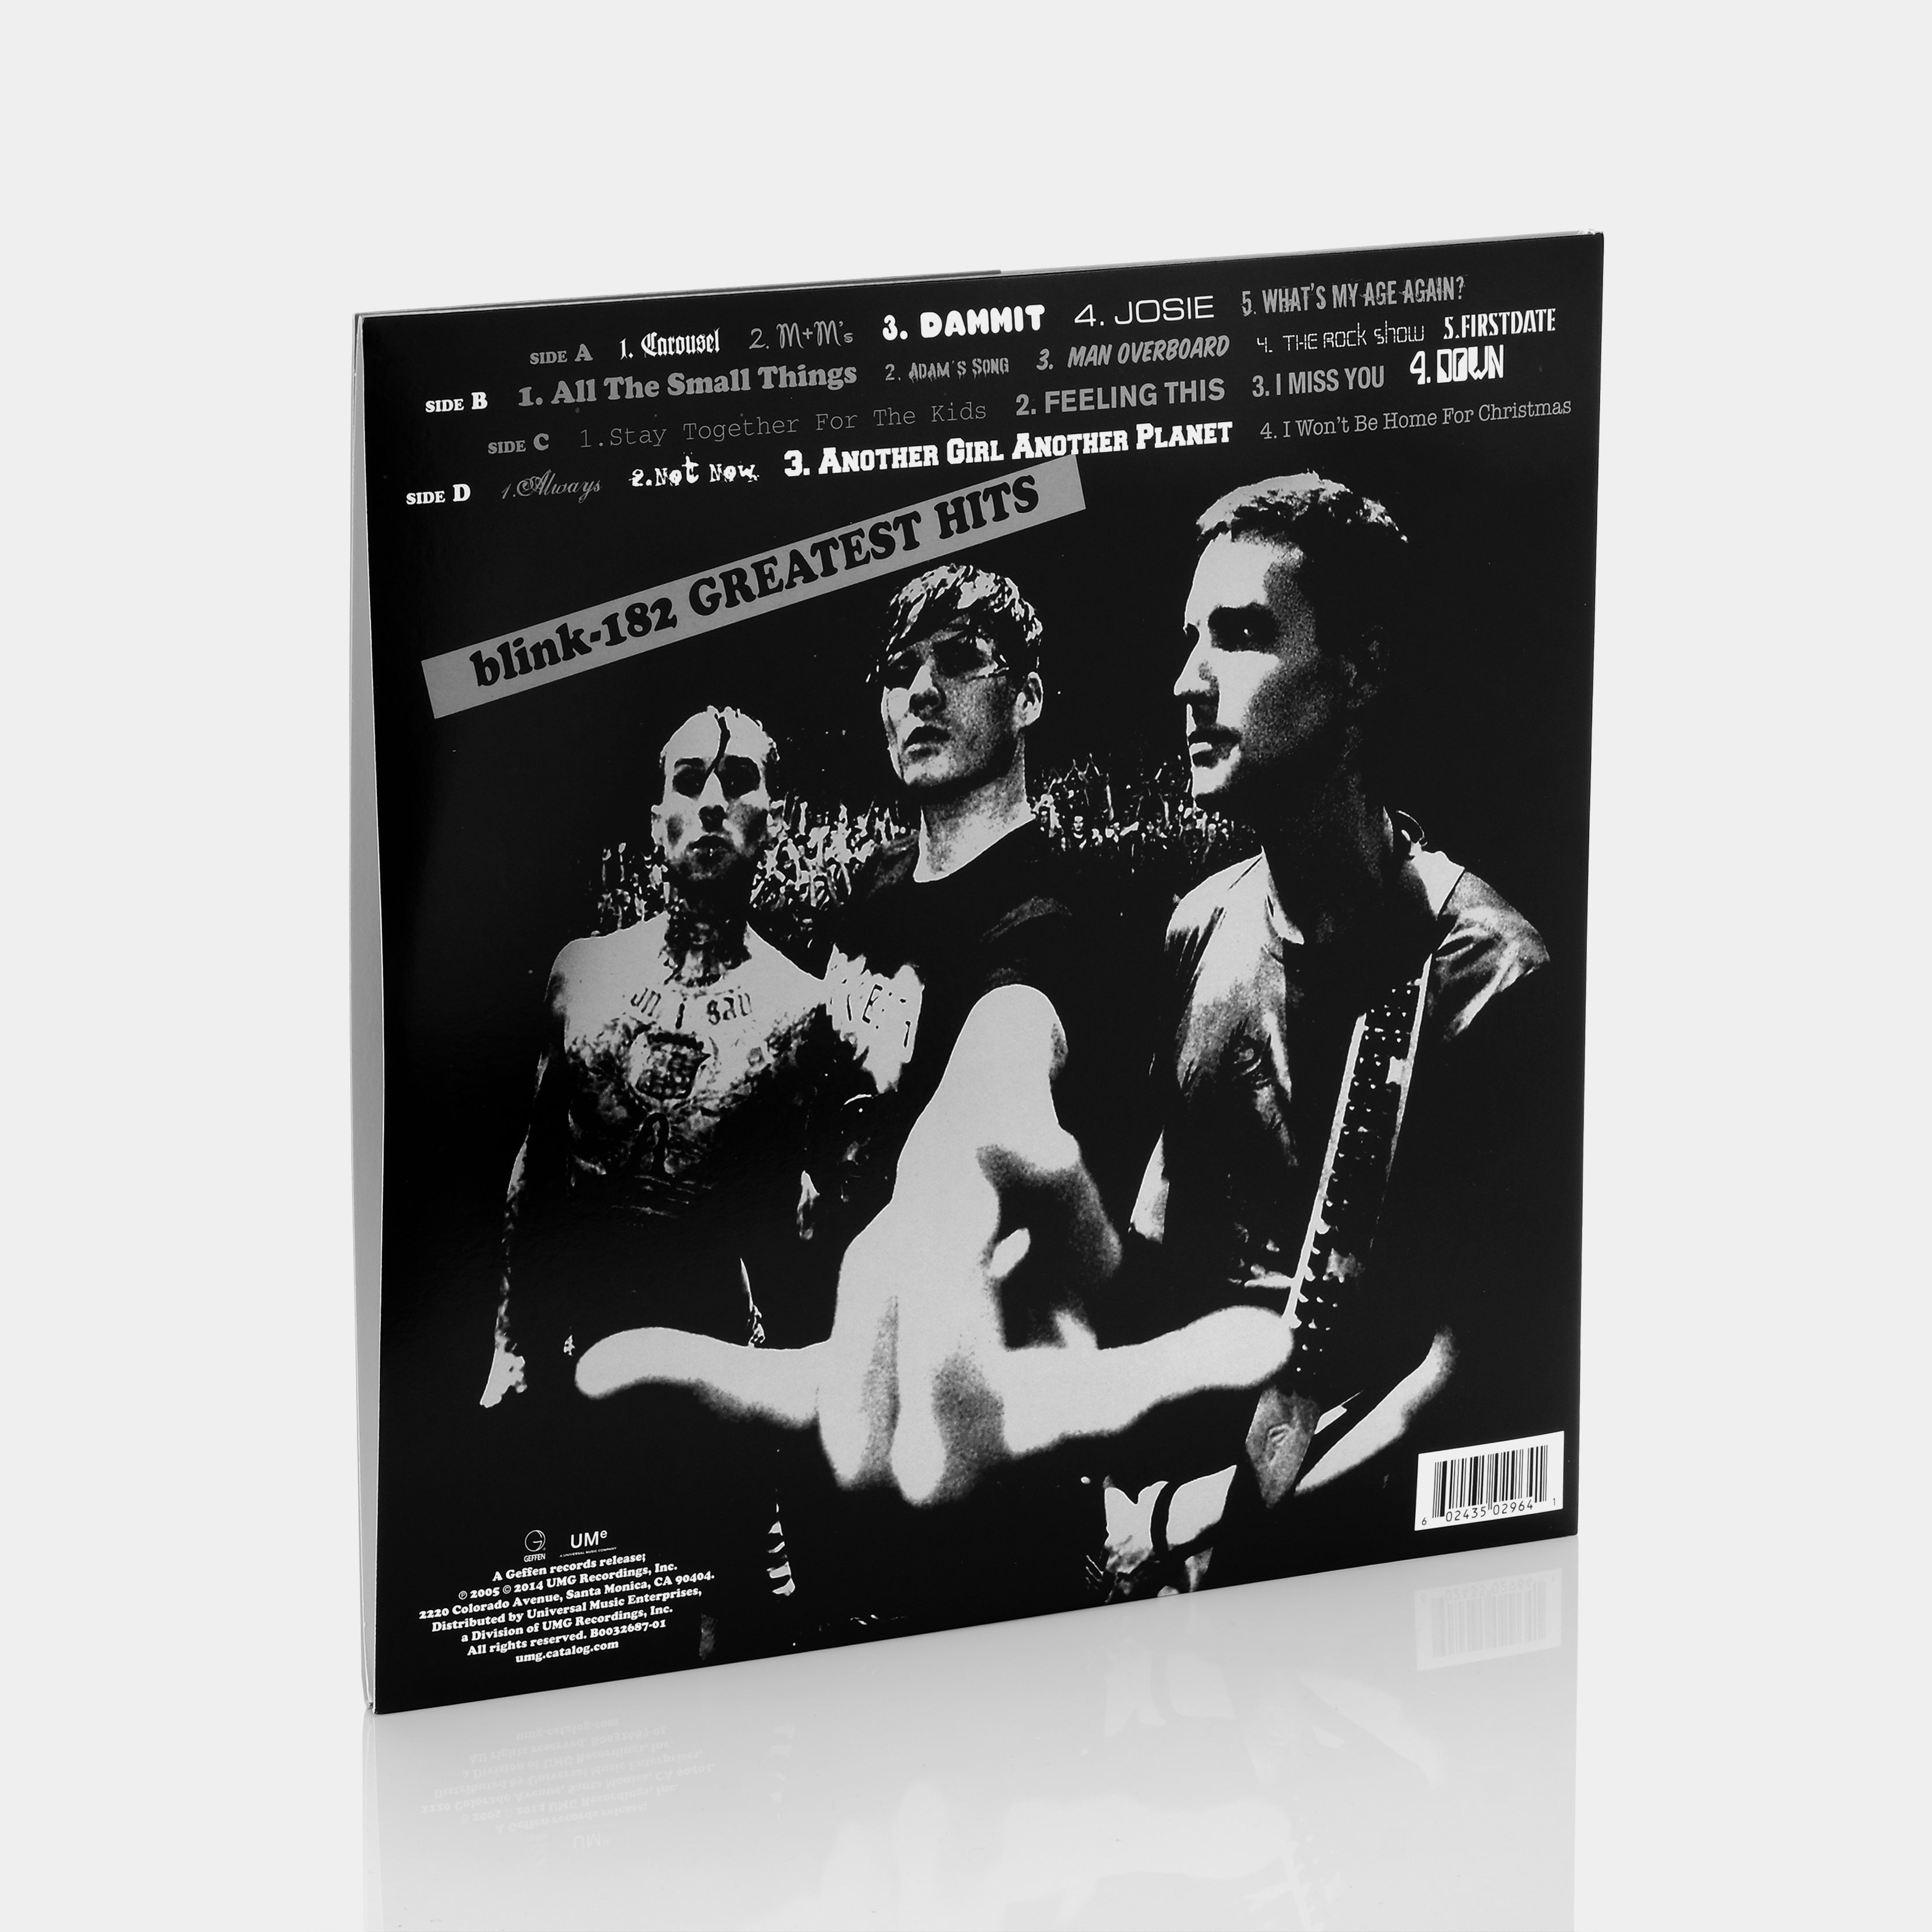 Blink-182 - Greatest Hits 2xLP Vinyl Record